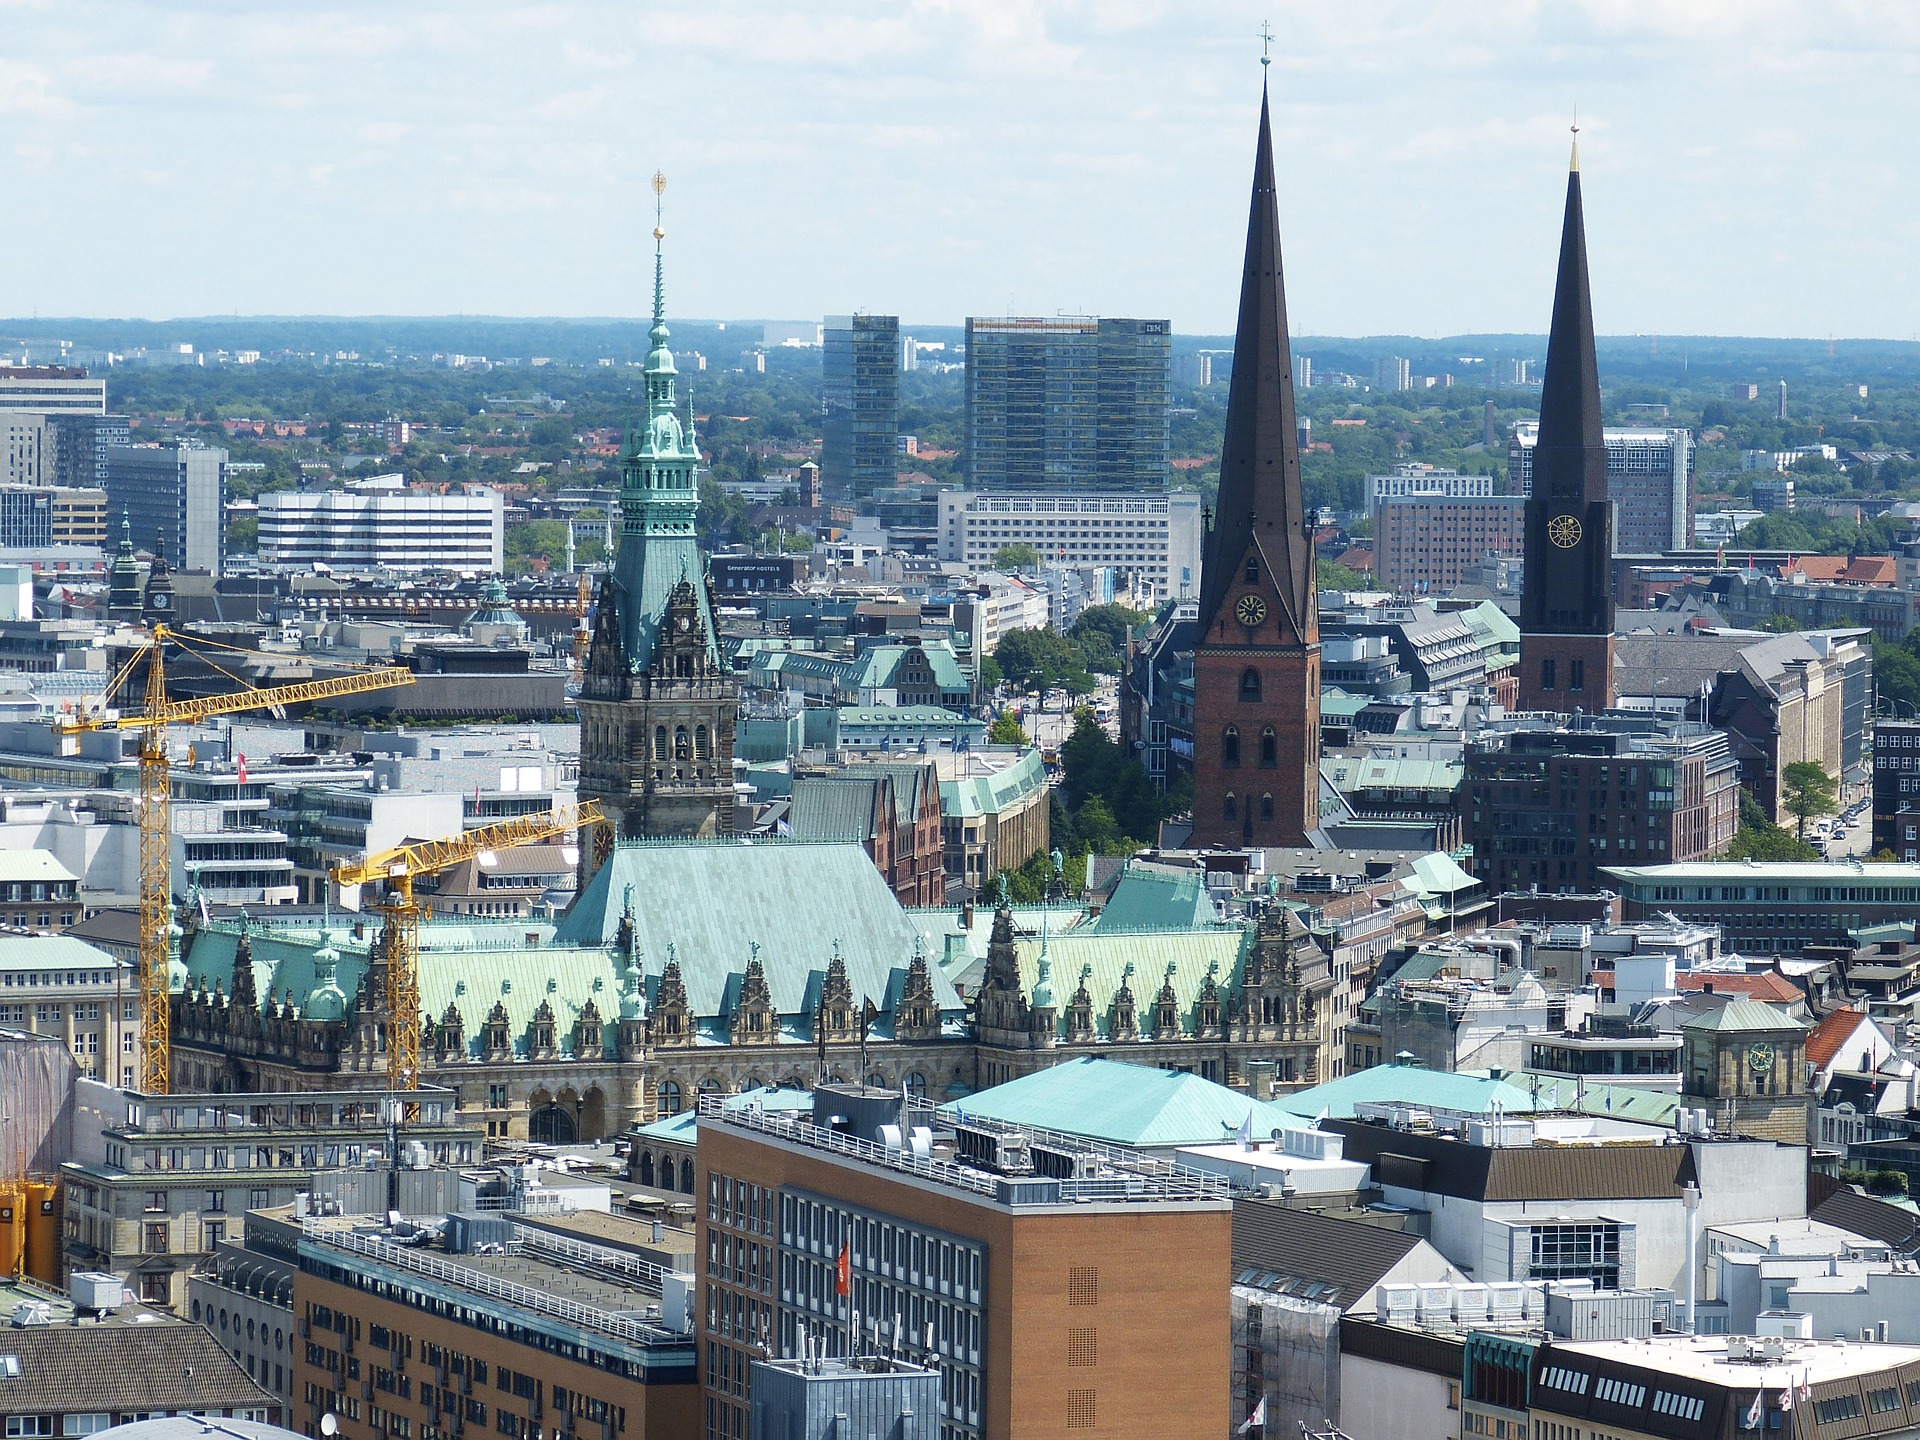 Hamburg von oben. Das Bild zeigt die Innenstadt mit Rathaus, Kirchtürmen sowie Einkaufs- und Bürogebäuden.